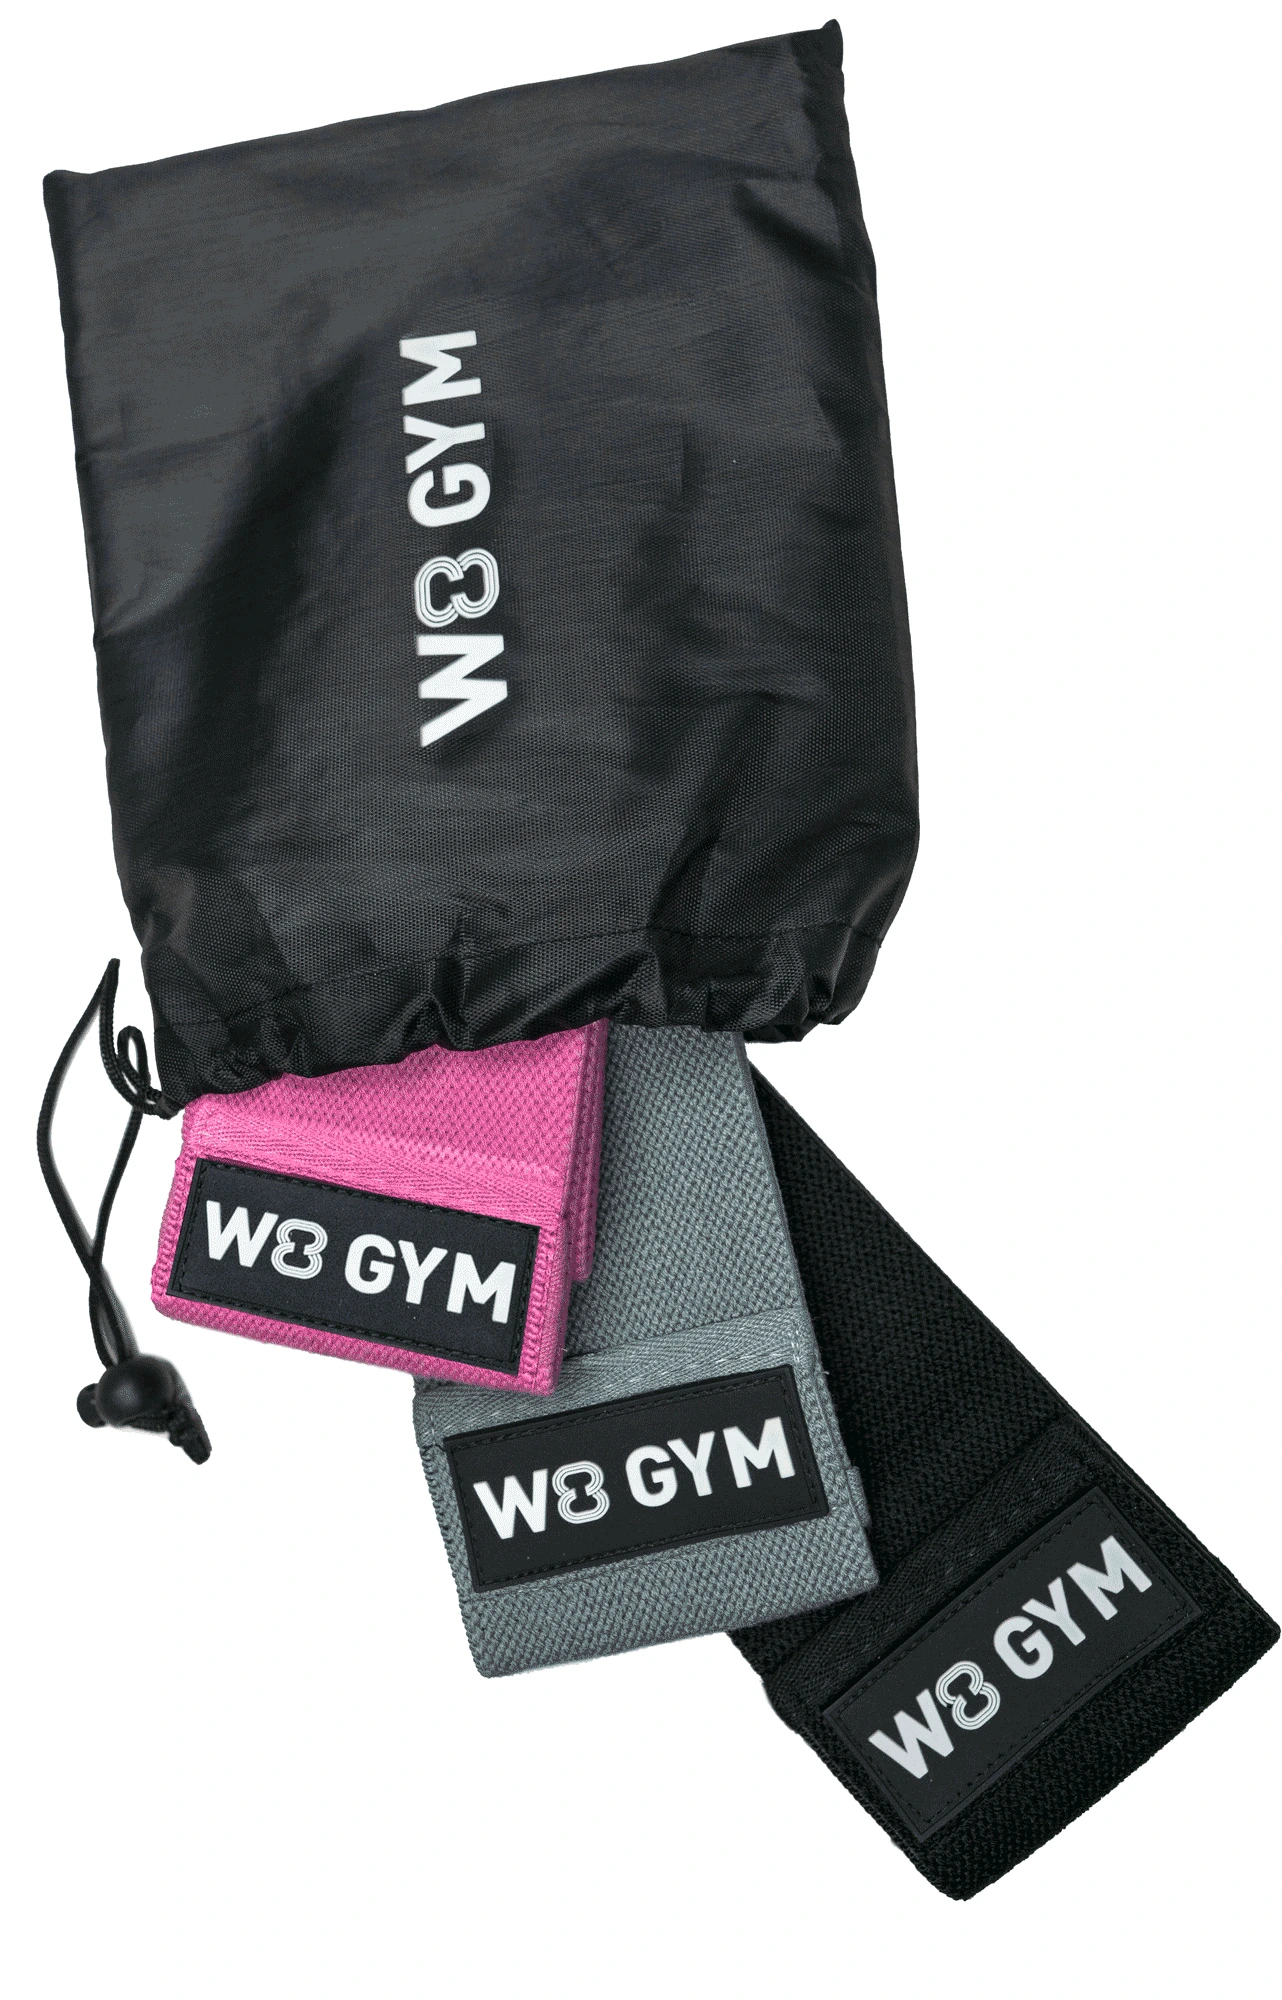 W8GYM bag pink - W8 GYM